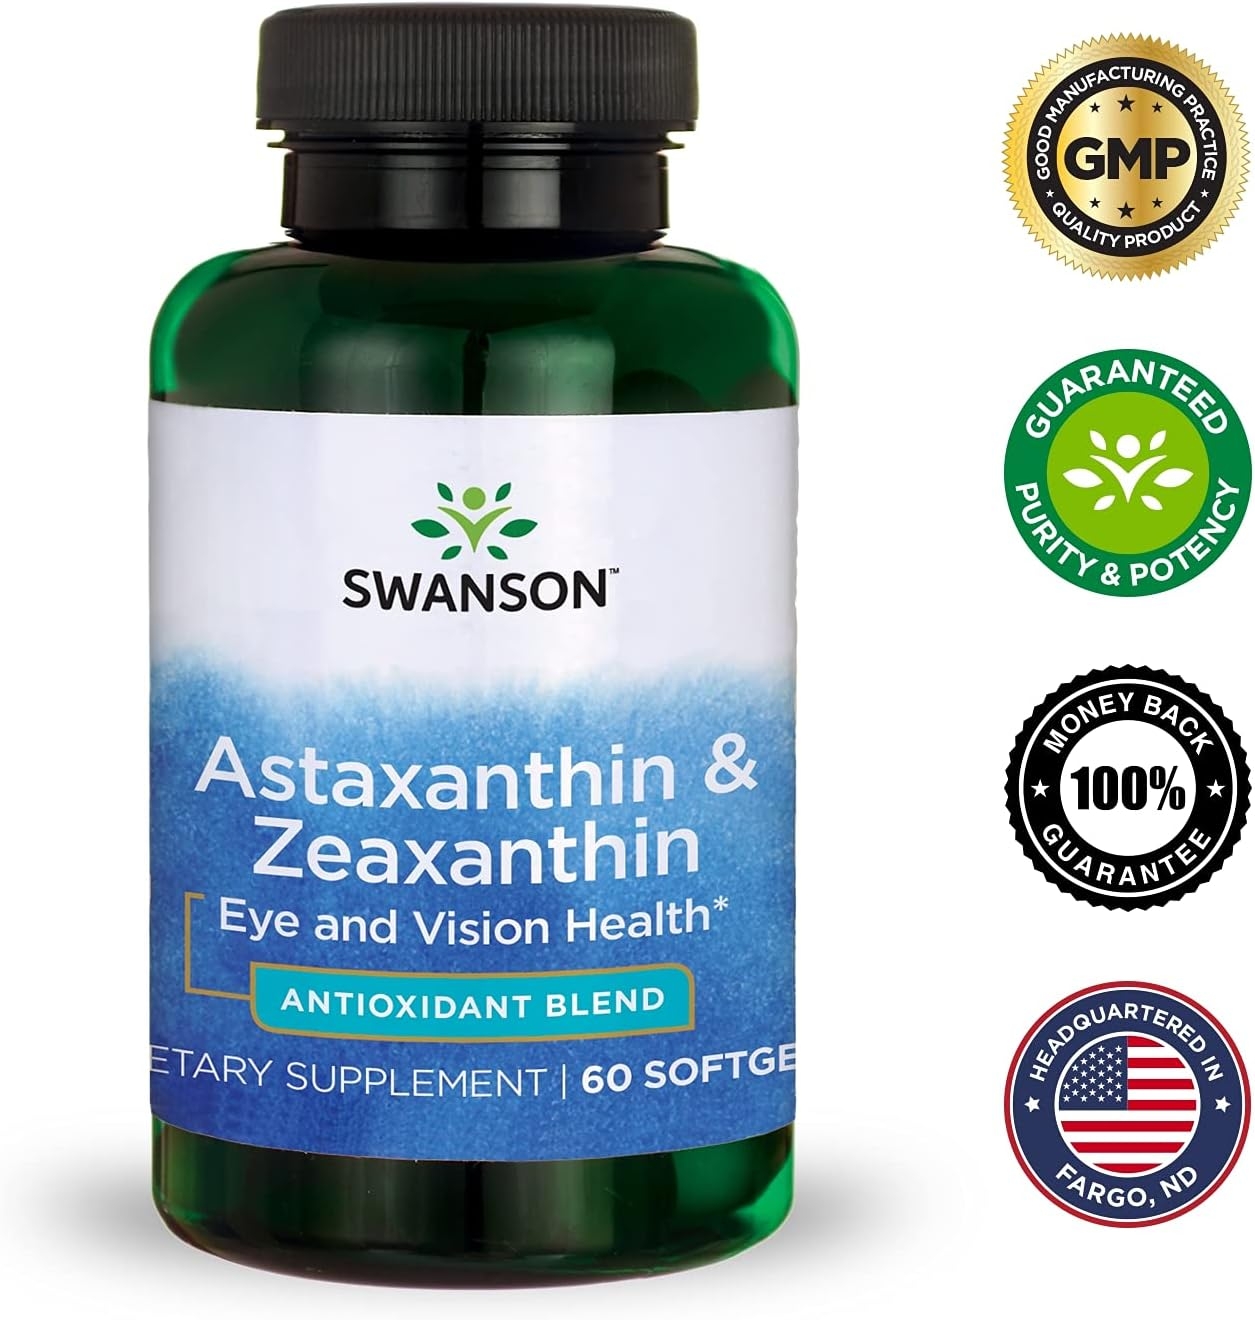 Swanson Astaxanthin & Zeaxanthin Eye Vision Brain Skin Health Antioxidant Support Supplement (Astaxanthin 4 mg & OmniXan Zeaxanthin 4 mg) 60 Softgels Sgels